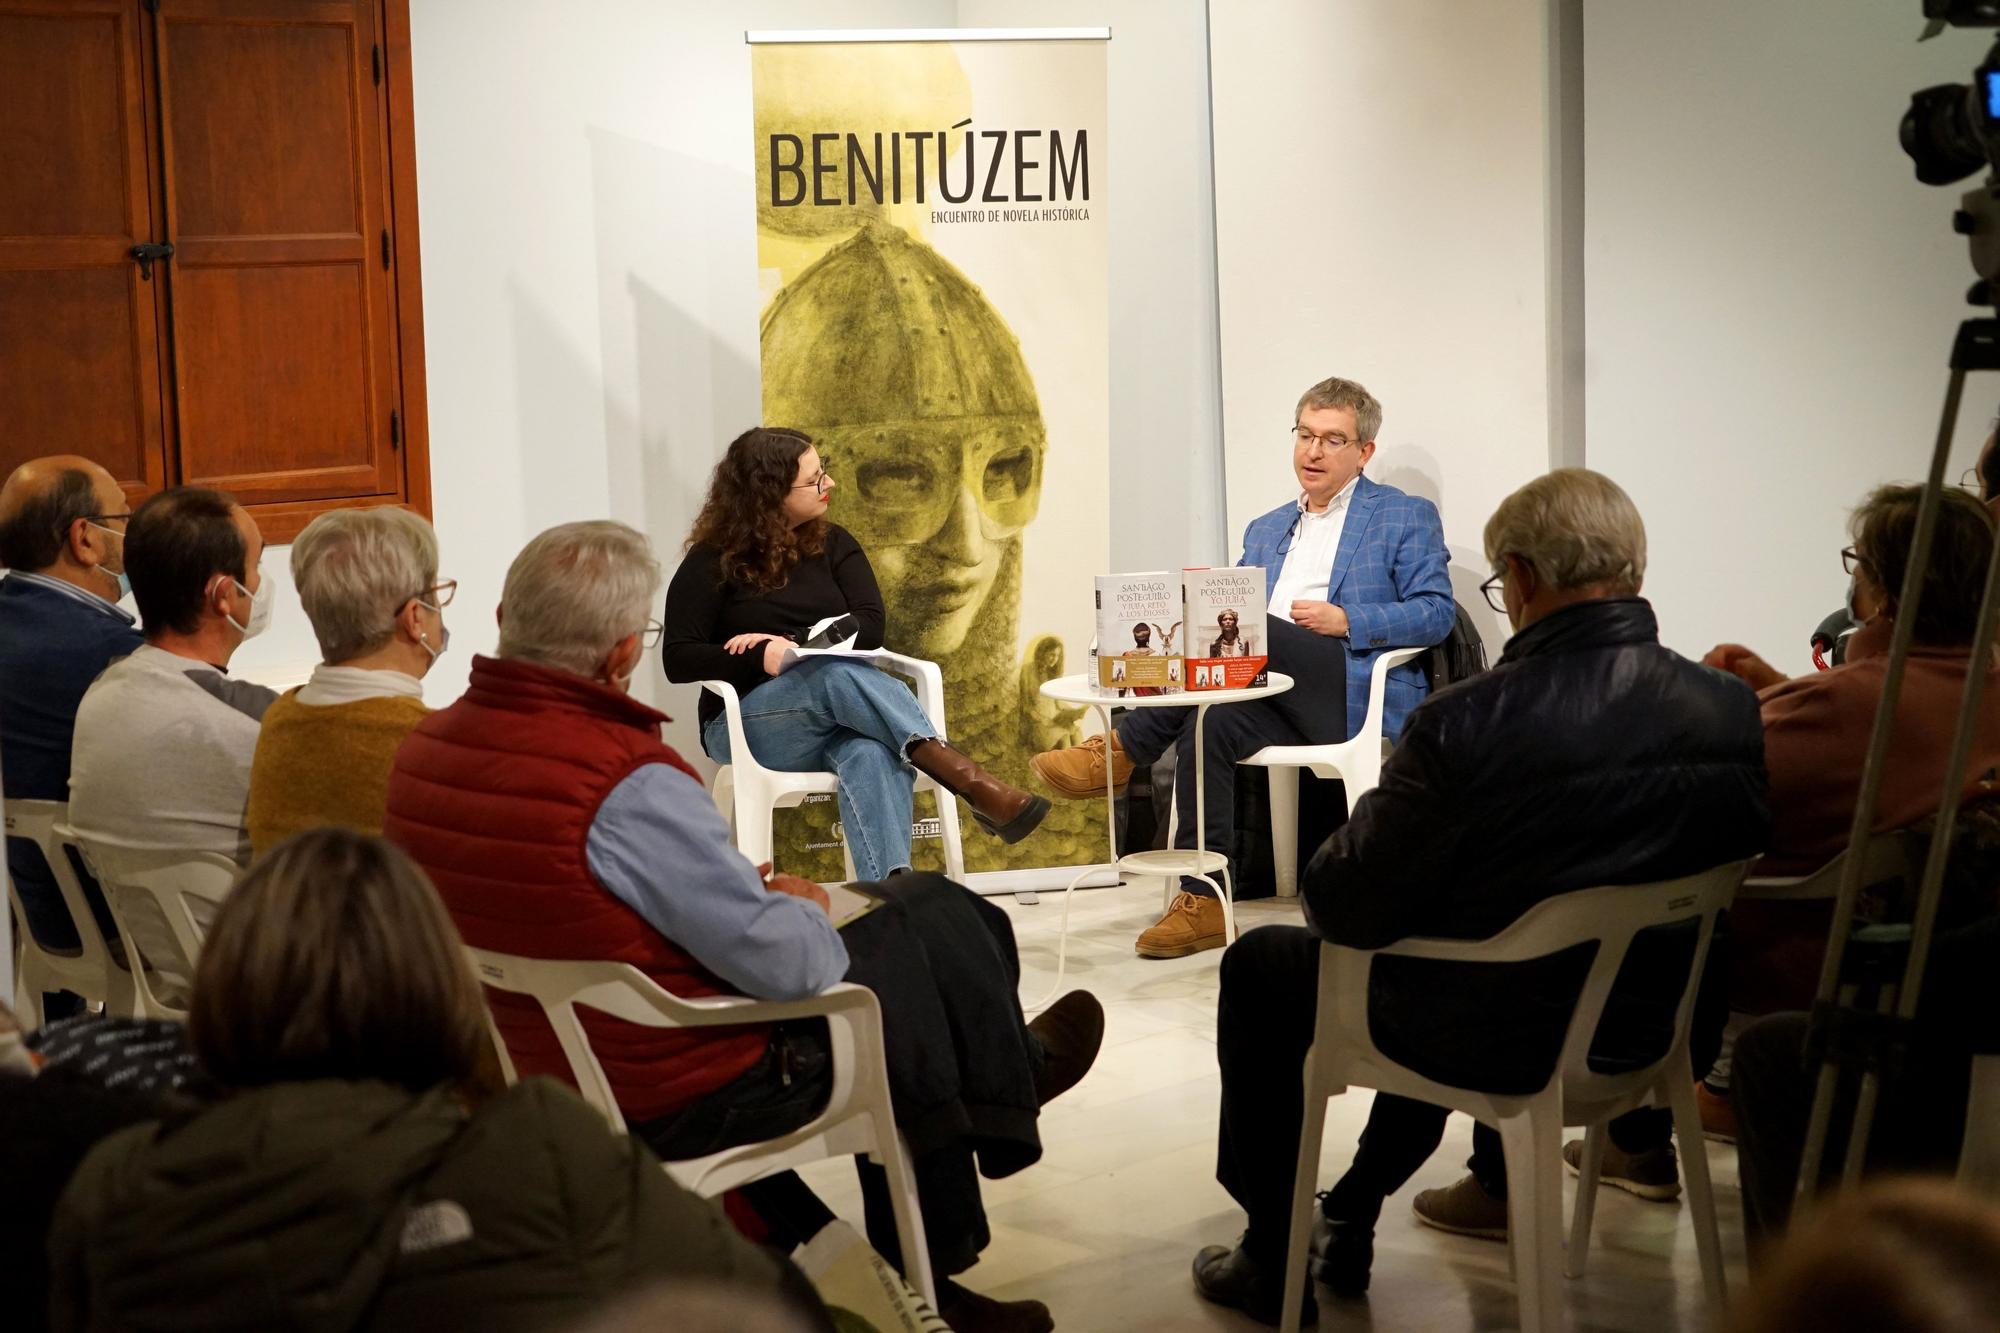 Benitúzem, el I Encuentro de Novela Histórica de Benetússer